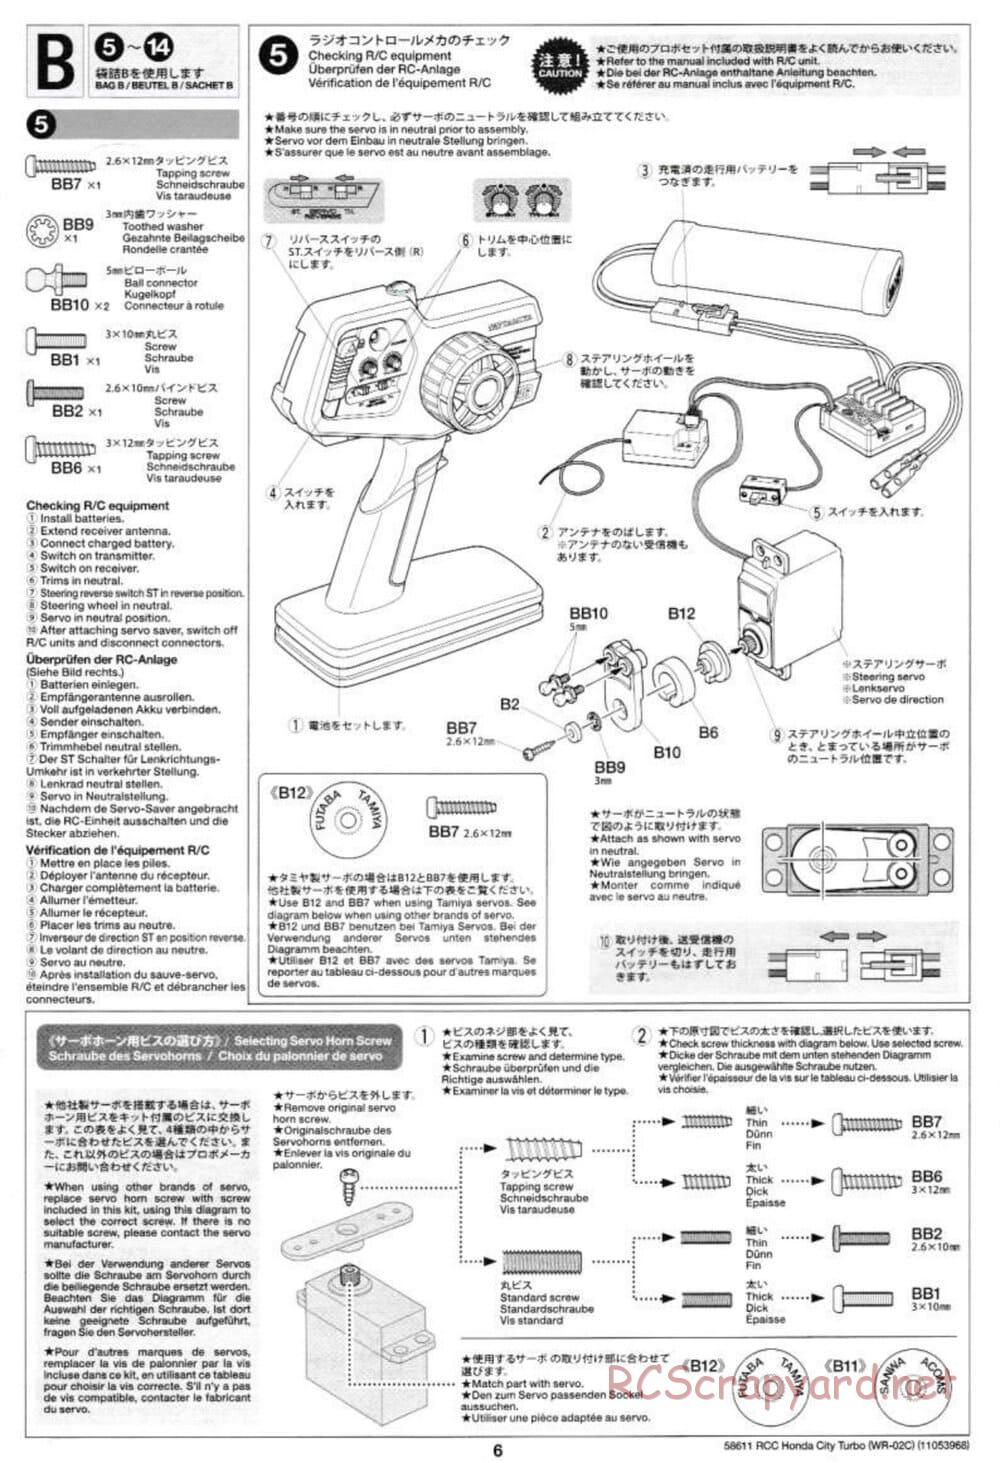 Tamiya - Honda City Turbo - WR-02C Chassis - Manual - Page 6